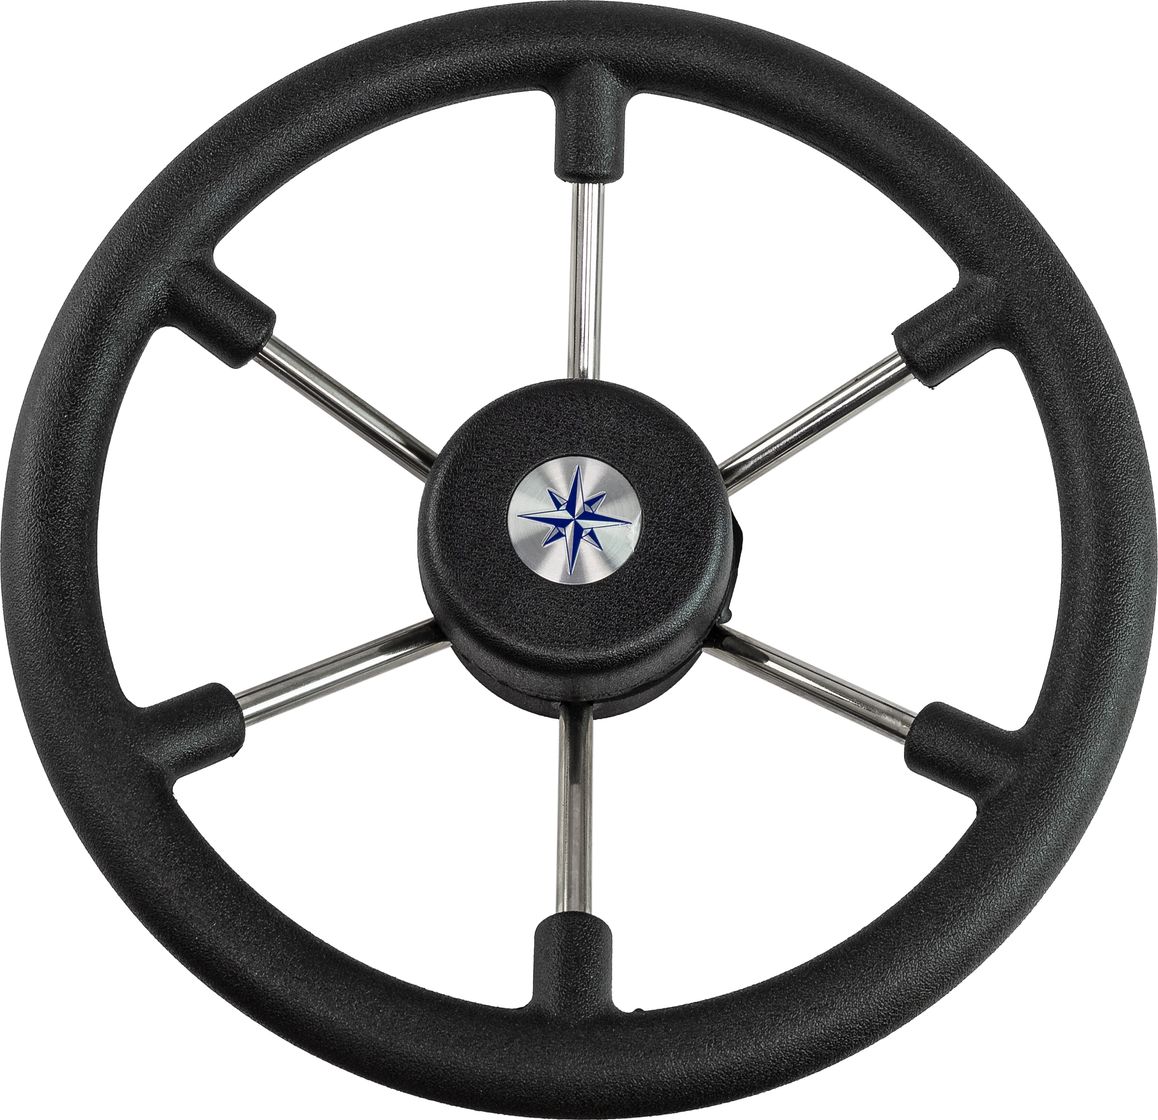 Рулевое колесо LEADER TANEGUM черный обод серебряные спицы д. 330 мм VN7330-01 рулевое колесо leader tanegum серый обод серебряные спицы д 330 мм vn7330 03